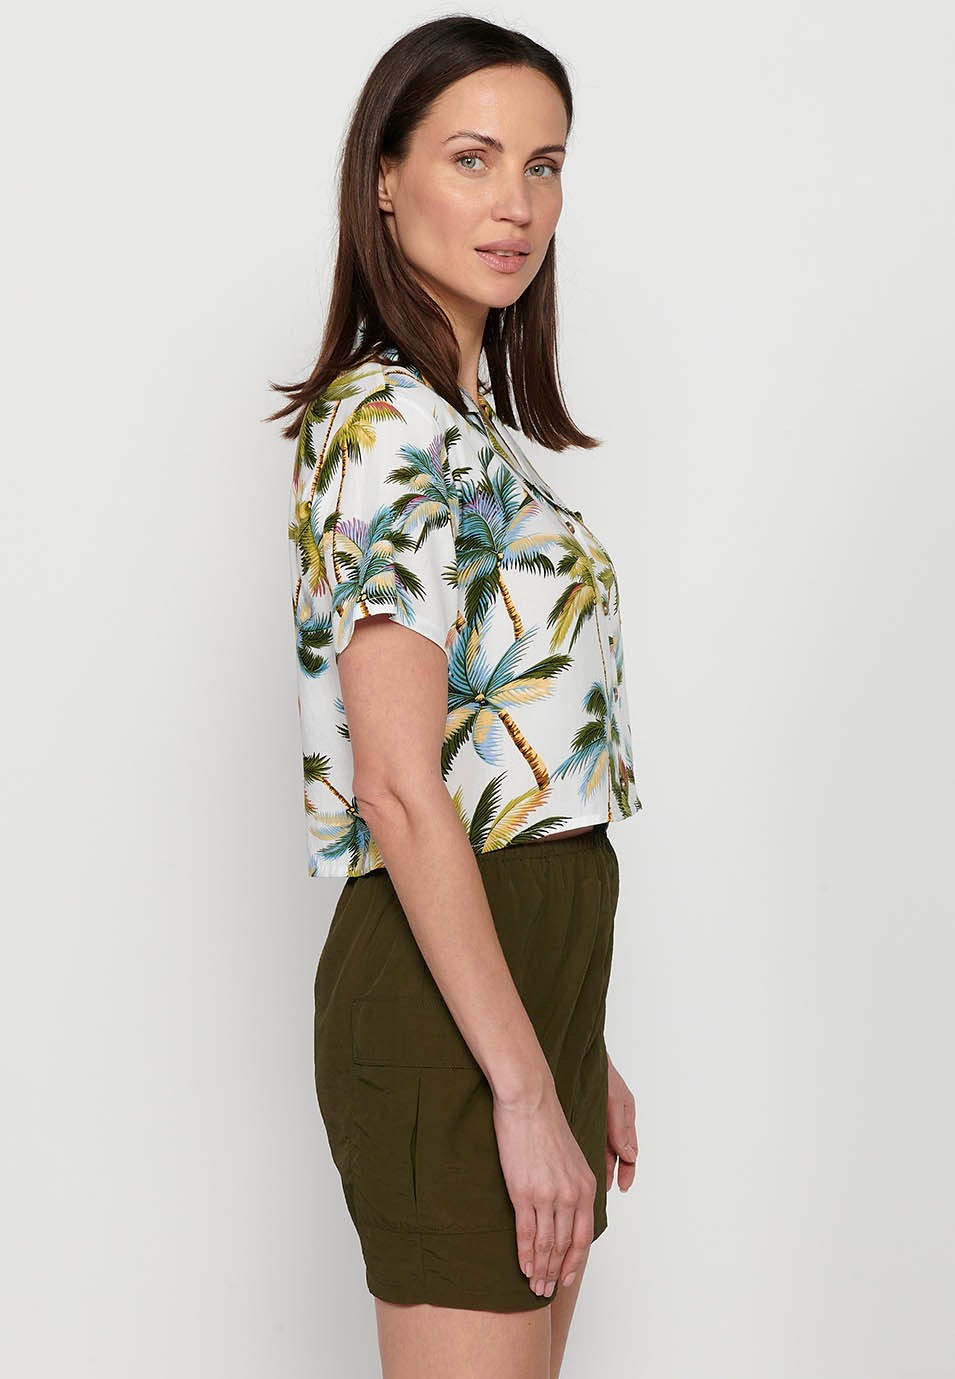 Damen-Bluse mit mehrfarbigem Revers, Hemdkragen, Blumendruck und kurzen Ärmeln